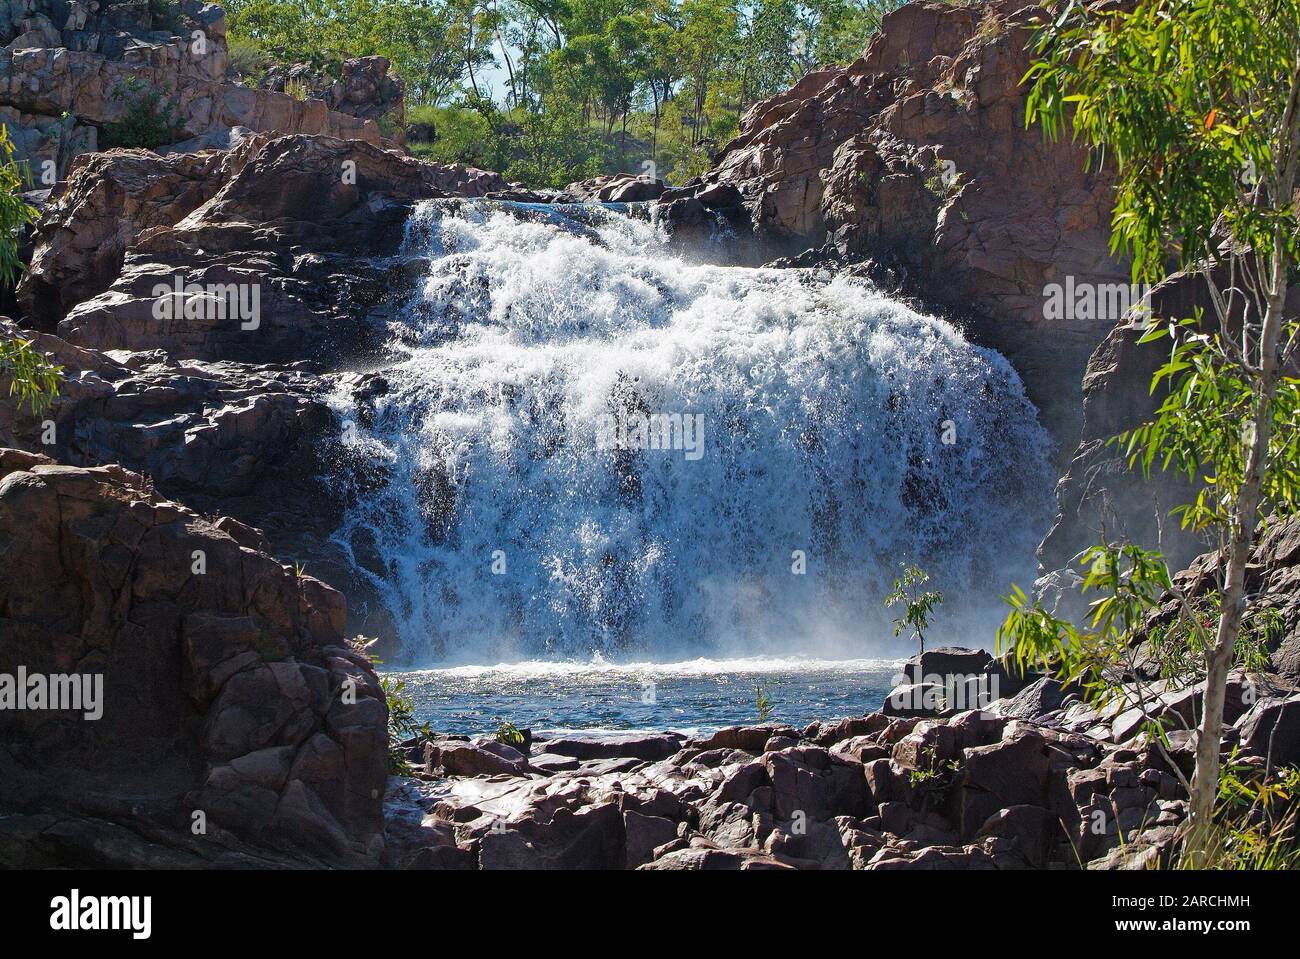 Australie, territoire du Nord, chutes d'Edith, alias Lelyin Falls, dans le parc national de Nitmiluk Banque D'Images